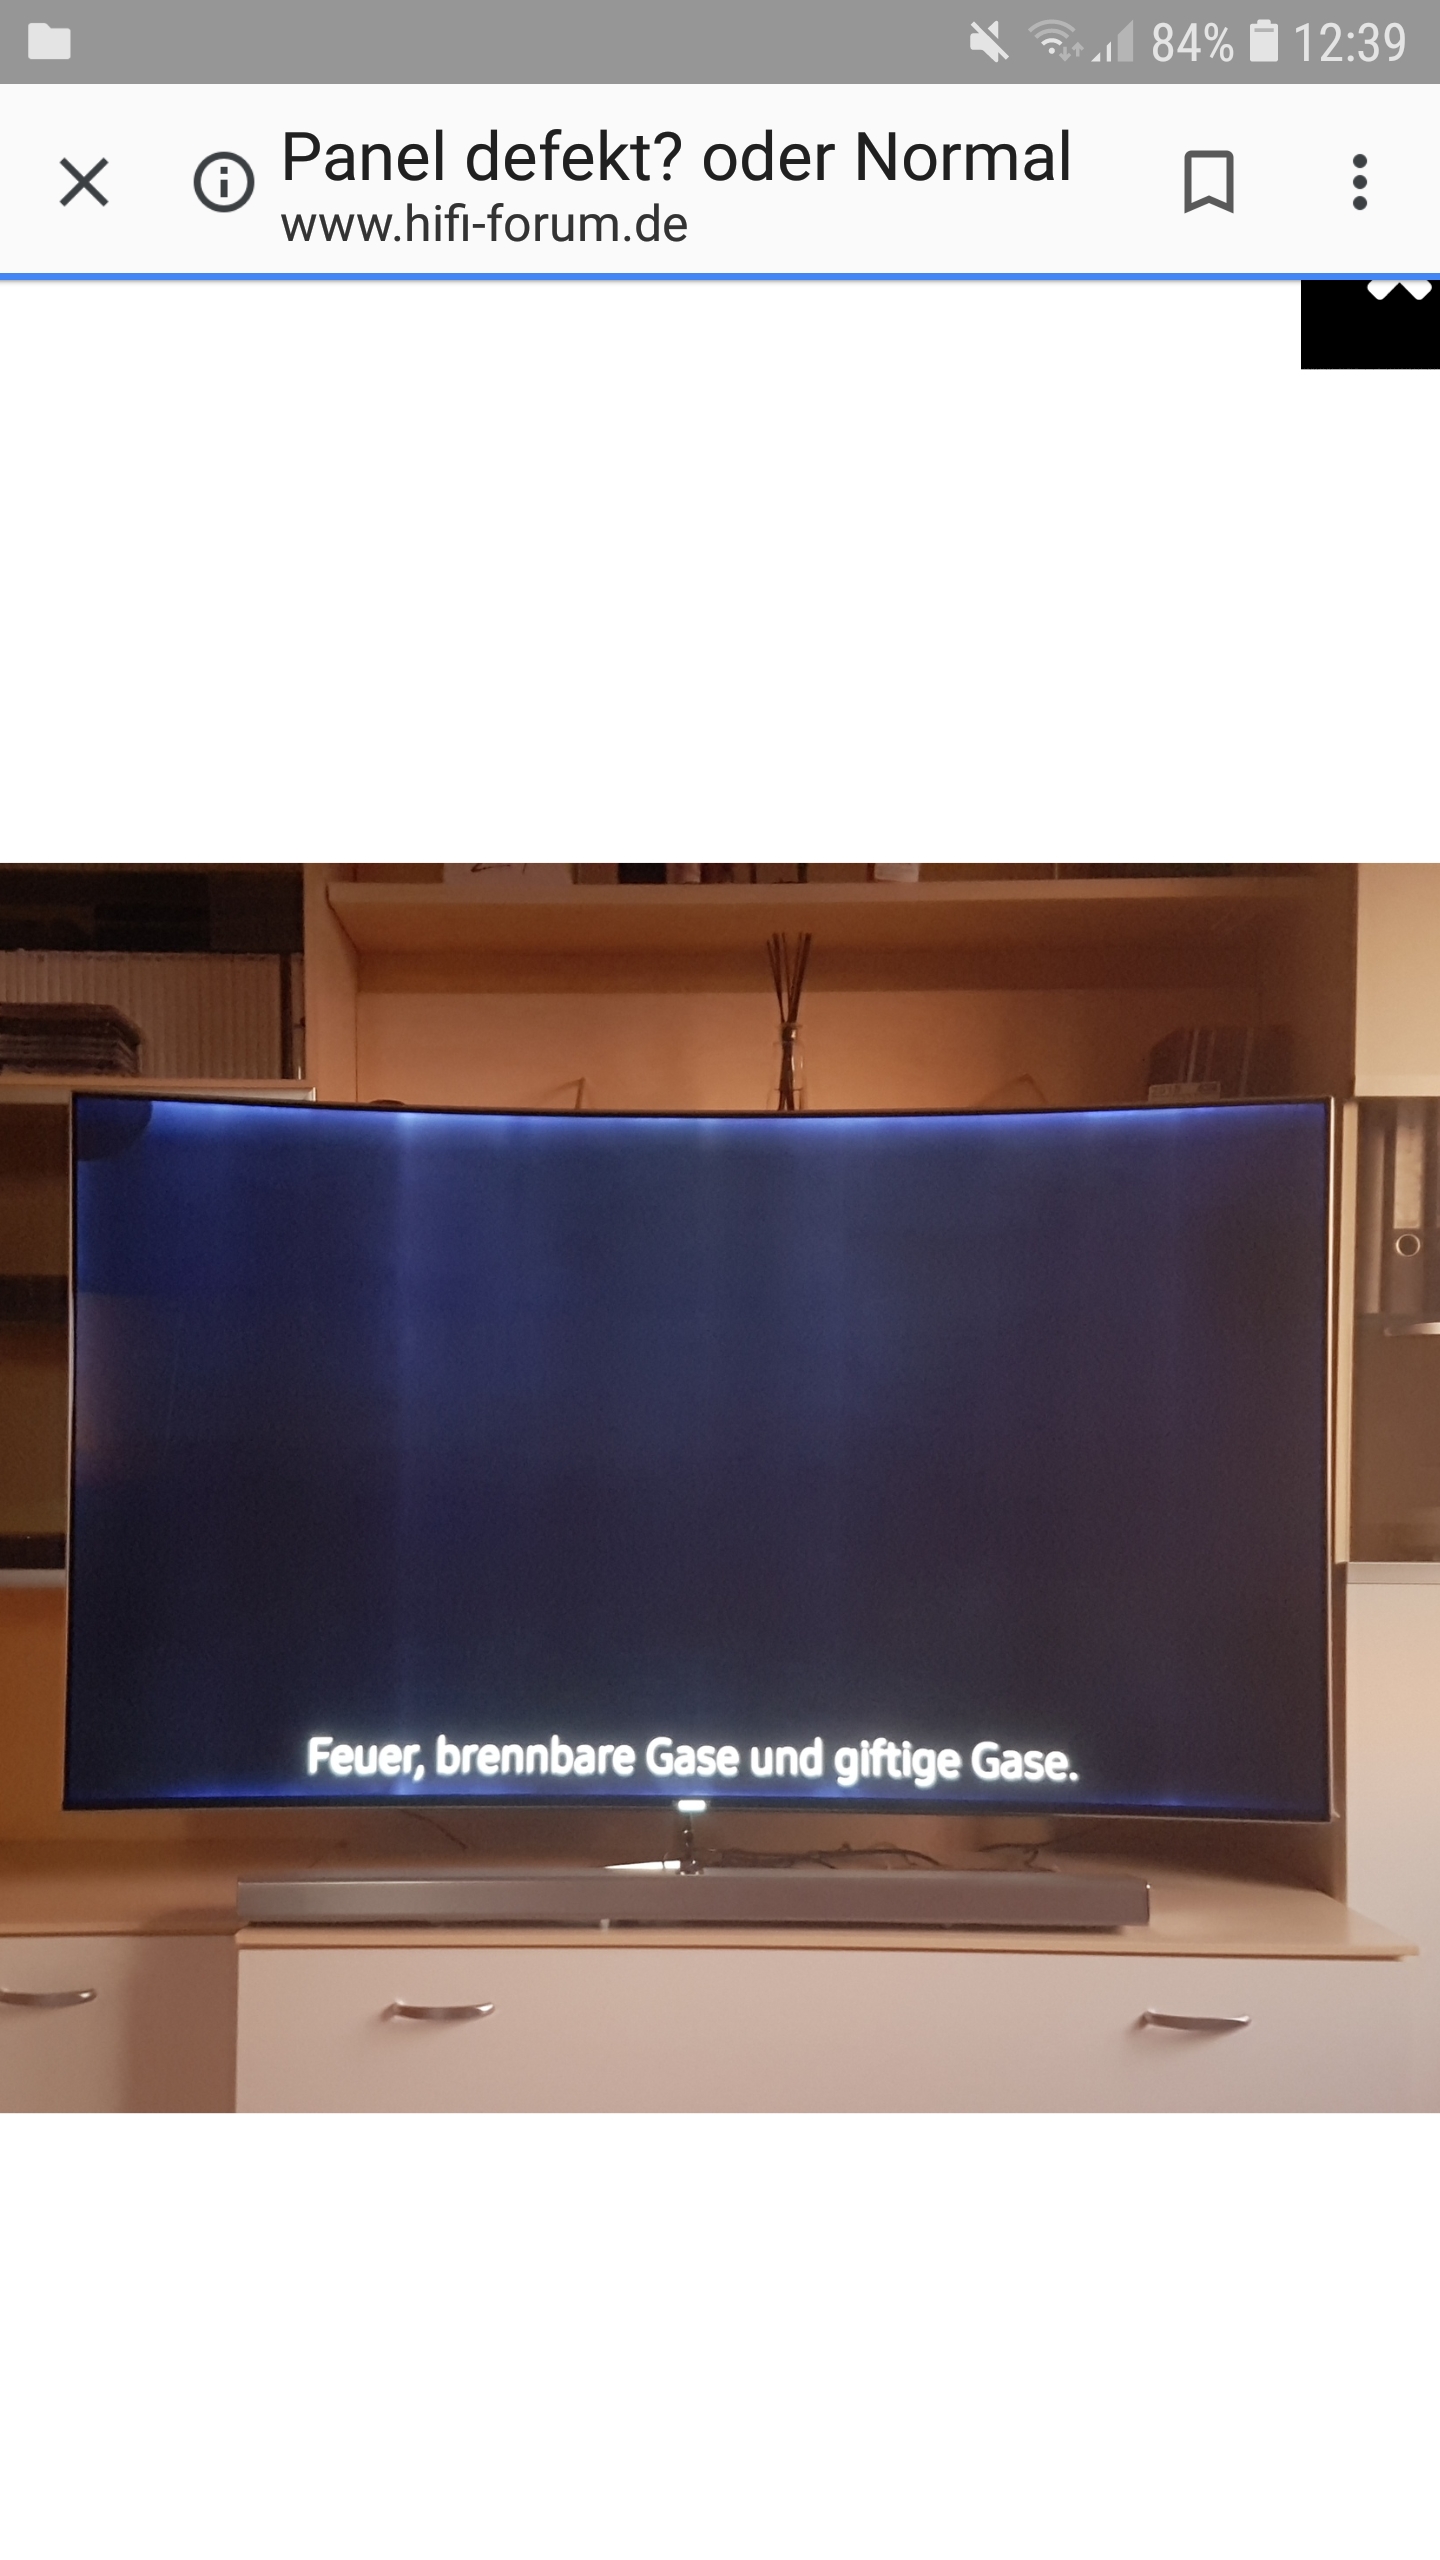 Samsung SUHD TV Bildfehler oder Panel defekt? - Samsung Community